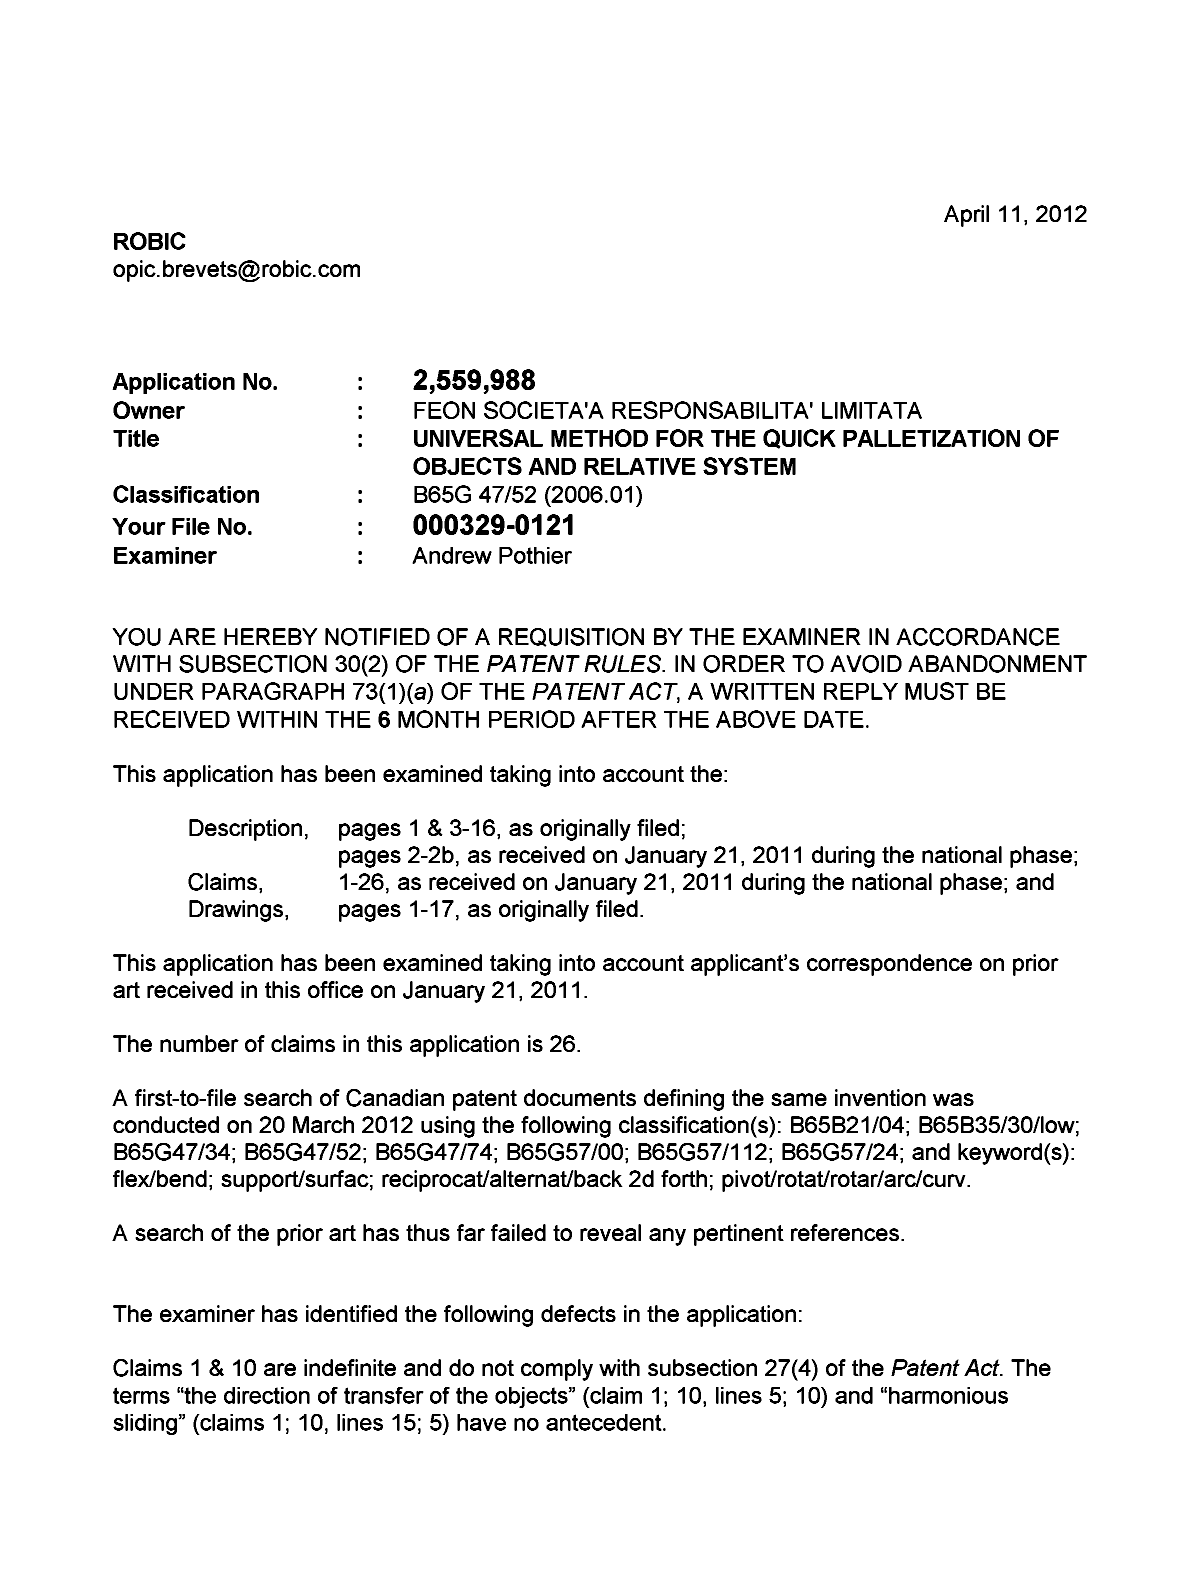 Document de brevet canadien 2559988. Poursuite-Amendment 20120411. Image 1 de 2